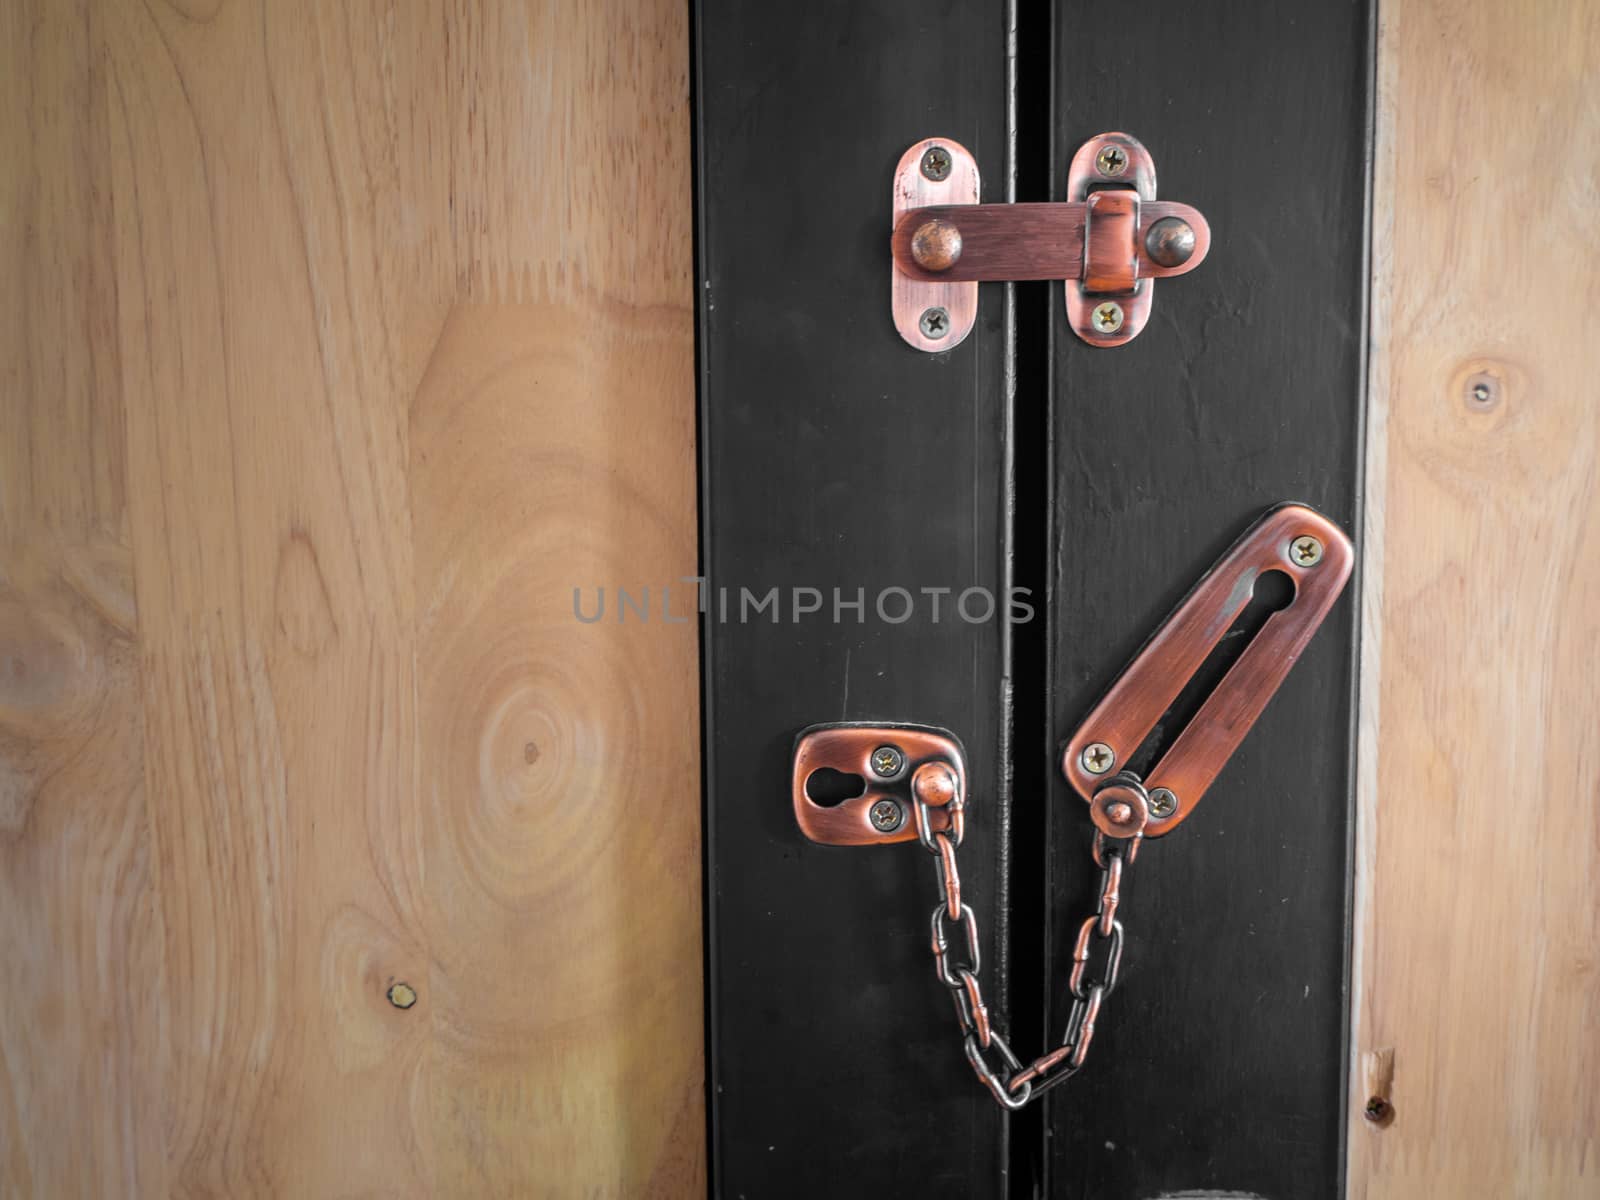 New brown modern wooden door lock in house interior